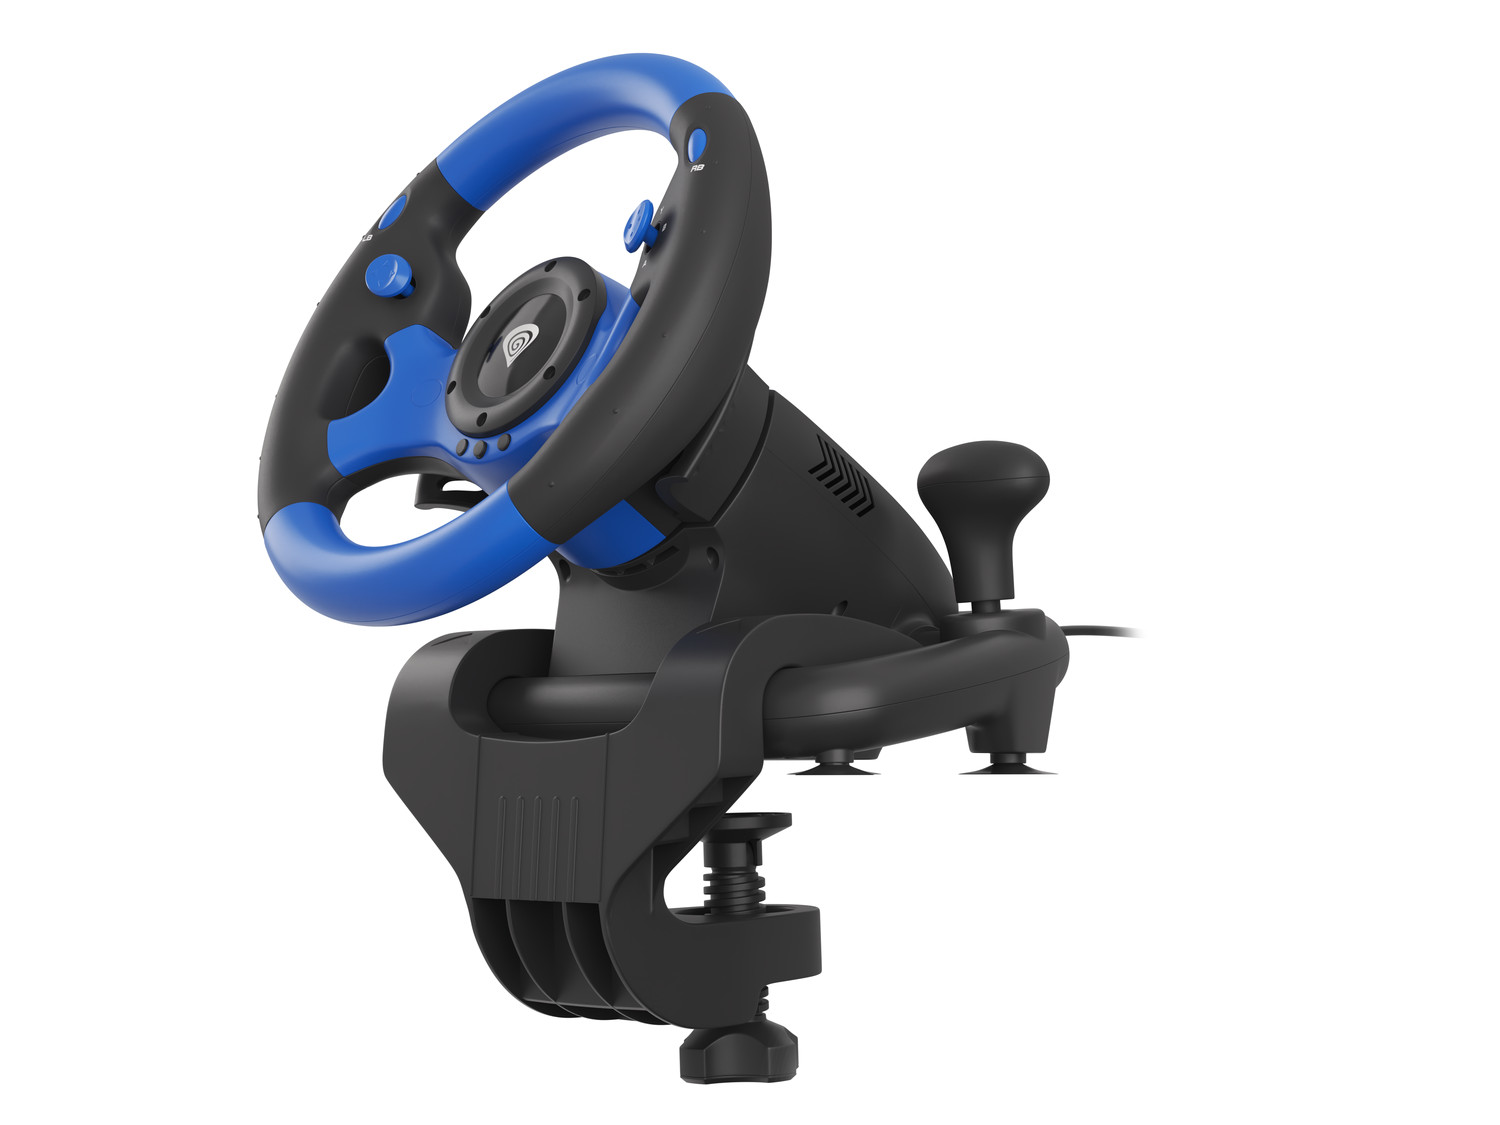 Genesis Seaborg 350 Herní volant, multiplatformní pro PC, PS4, PS3, Xbox One, Switch, 180° 